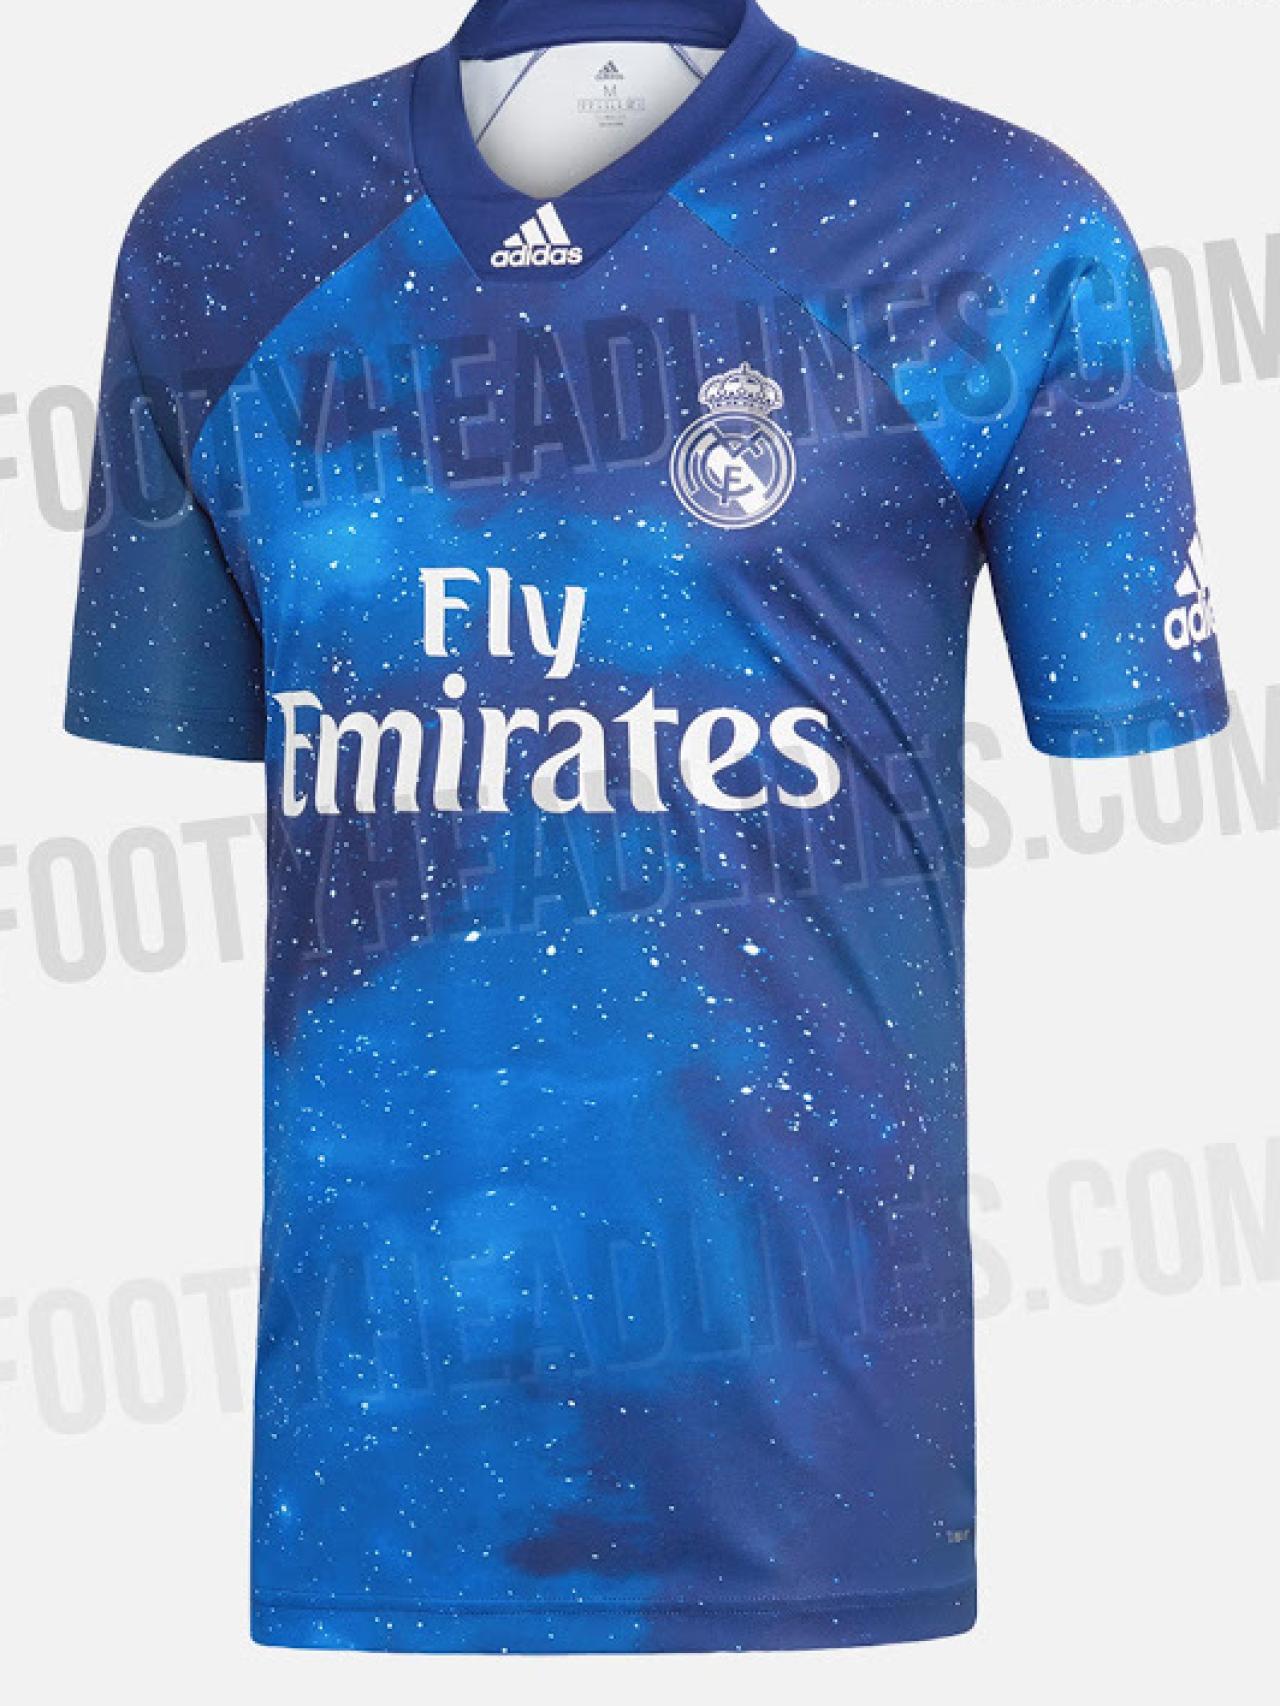 El cielo maorí tipo EA Sports y Adidas diseñan la camiseta más galáctica del Real Madrid